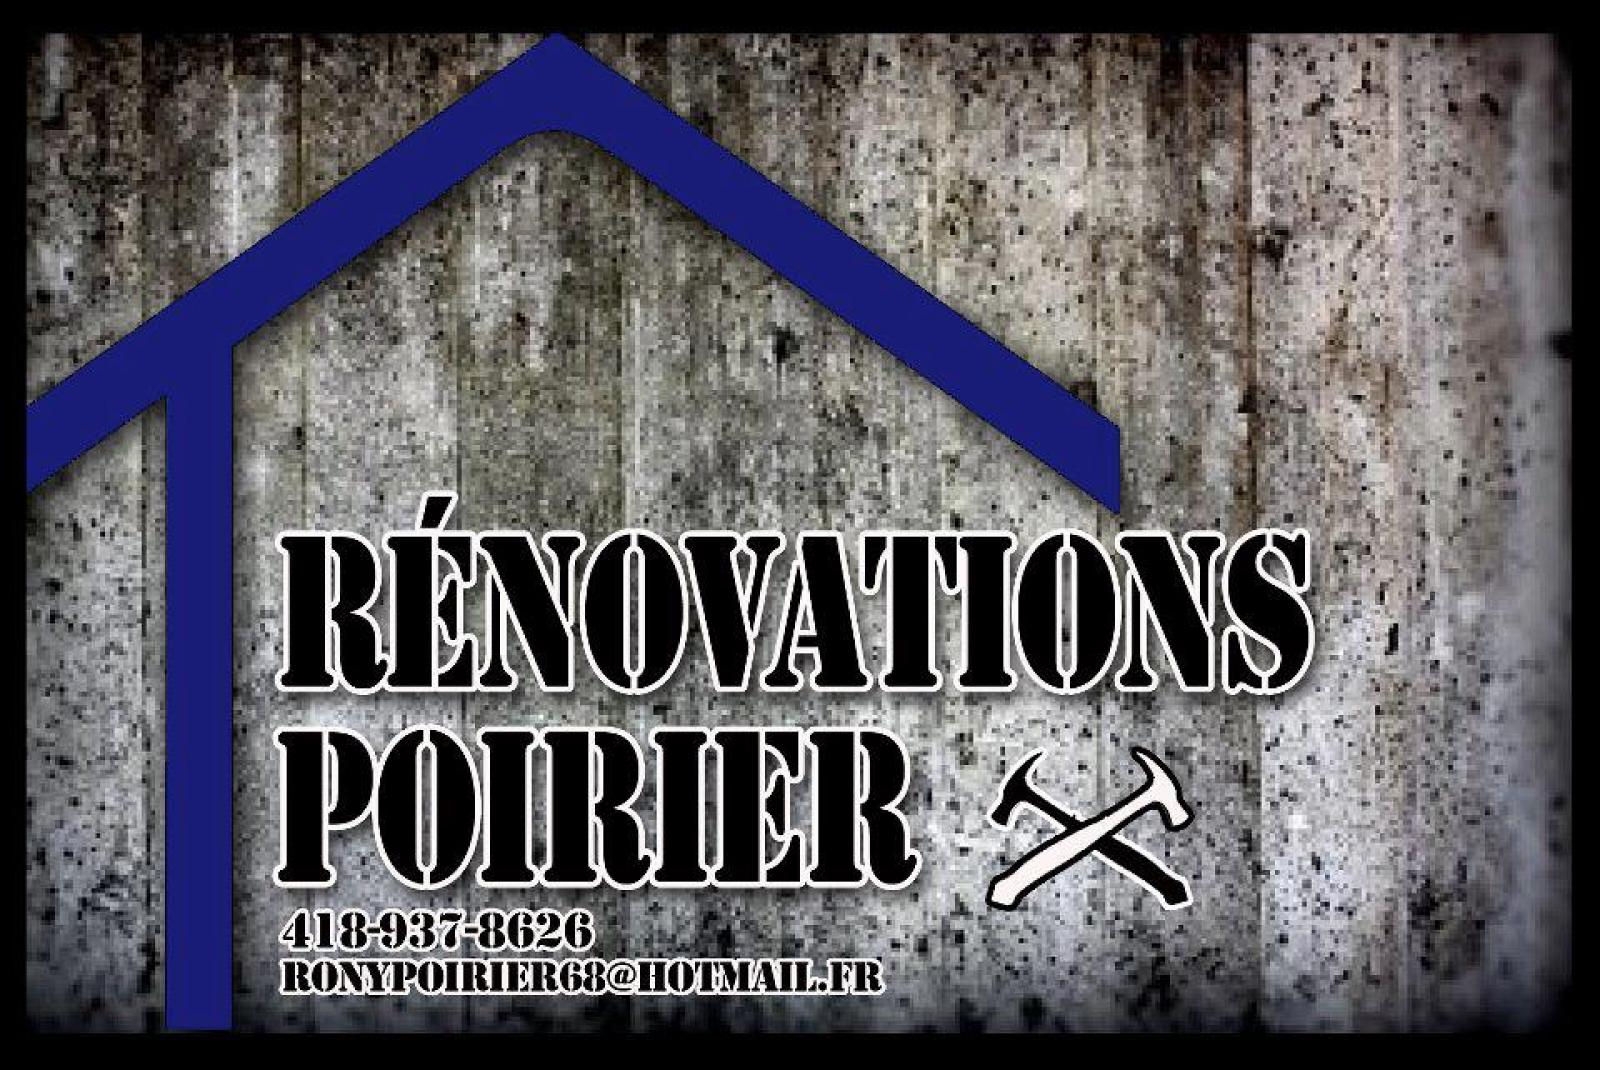 Rénovation poirier îles-de-la-Madeleine. Logo